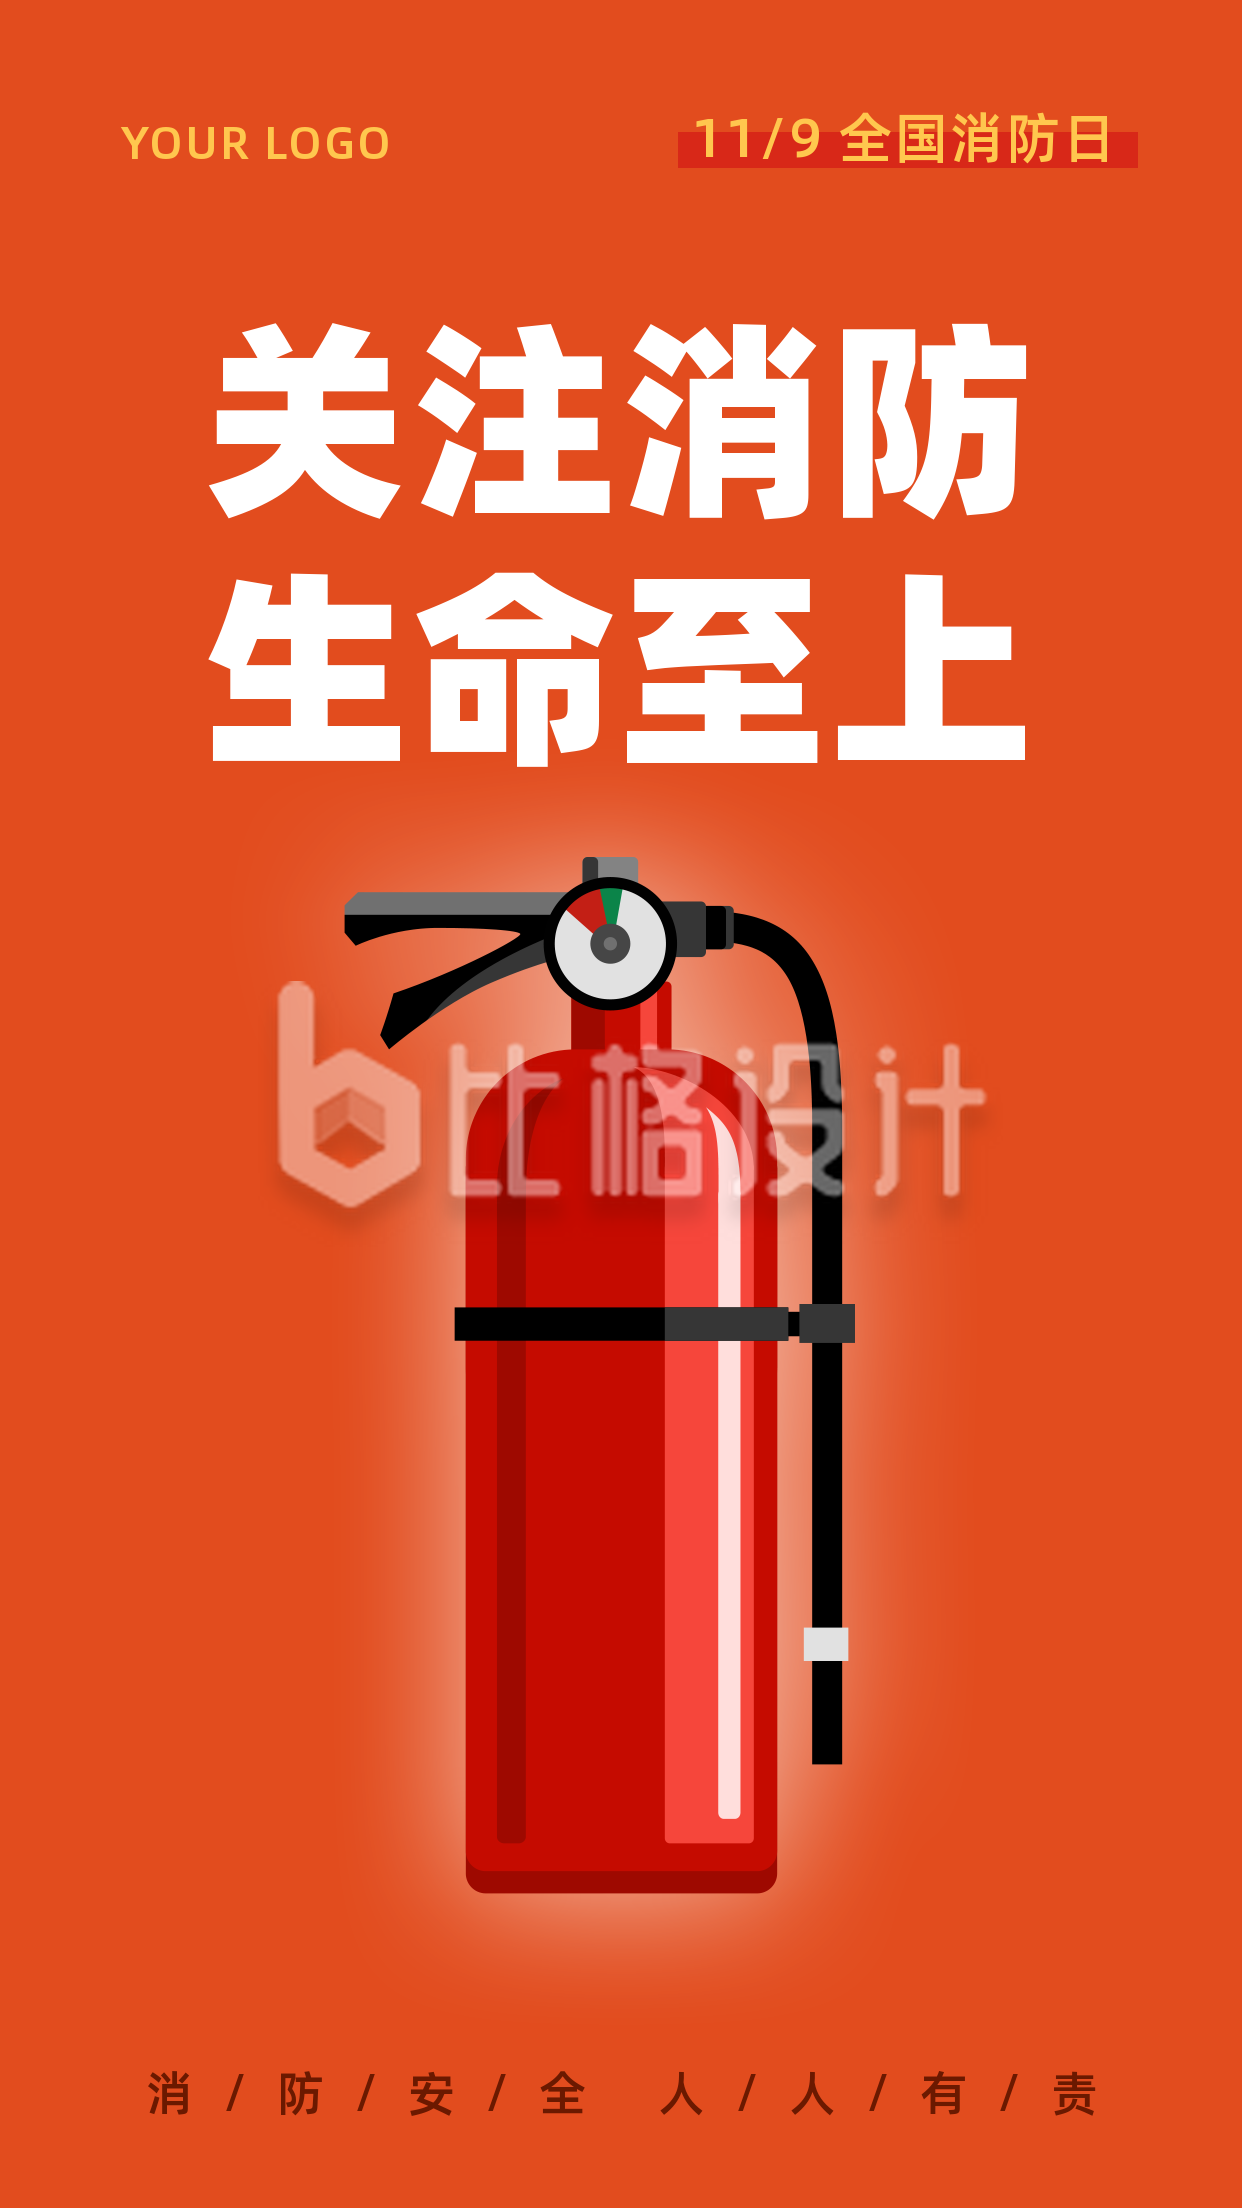 119消防日全民消防灭火器手机海报